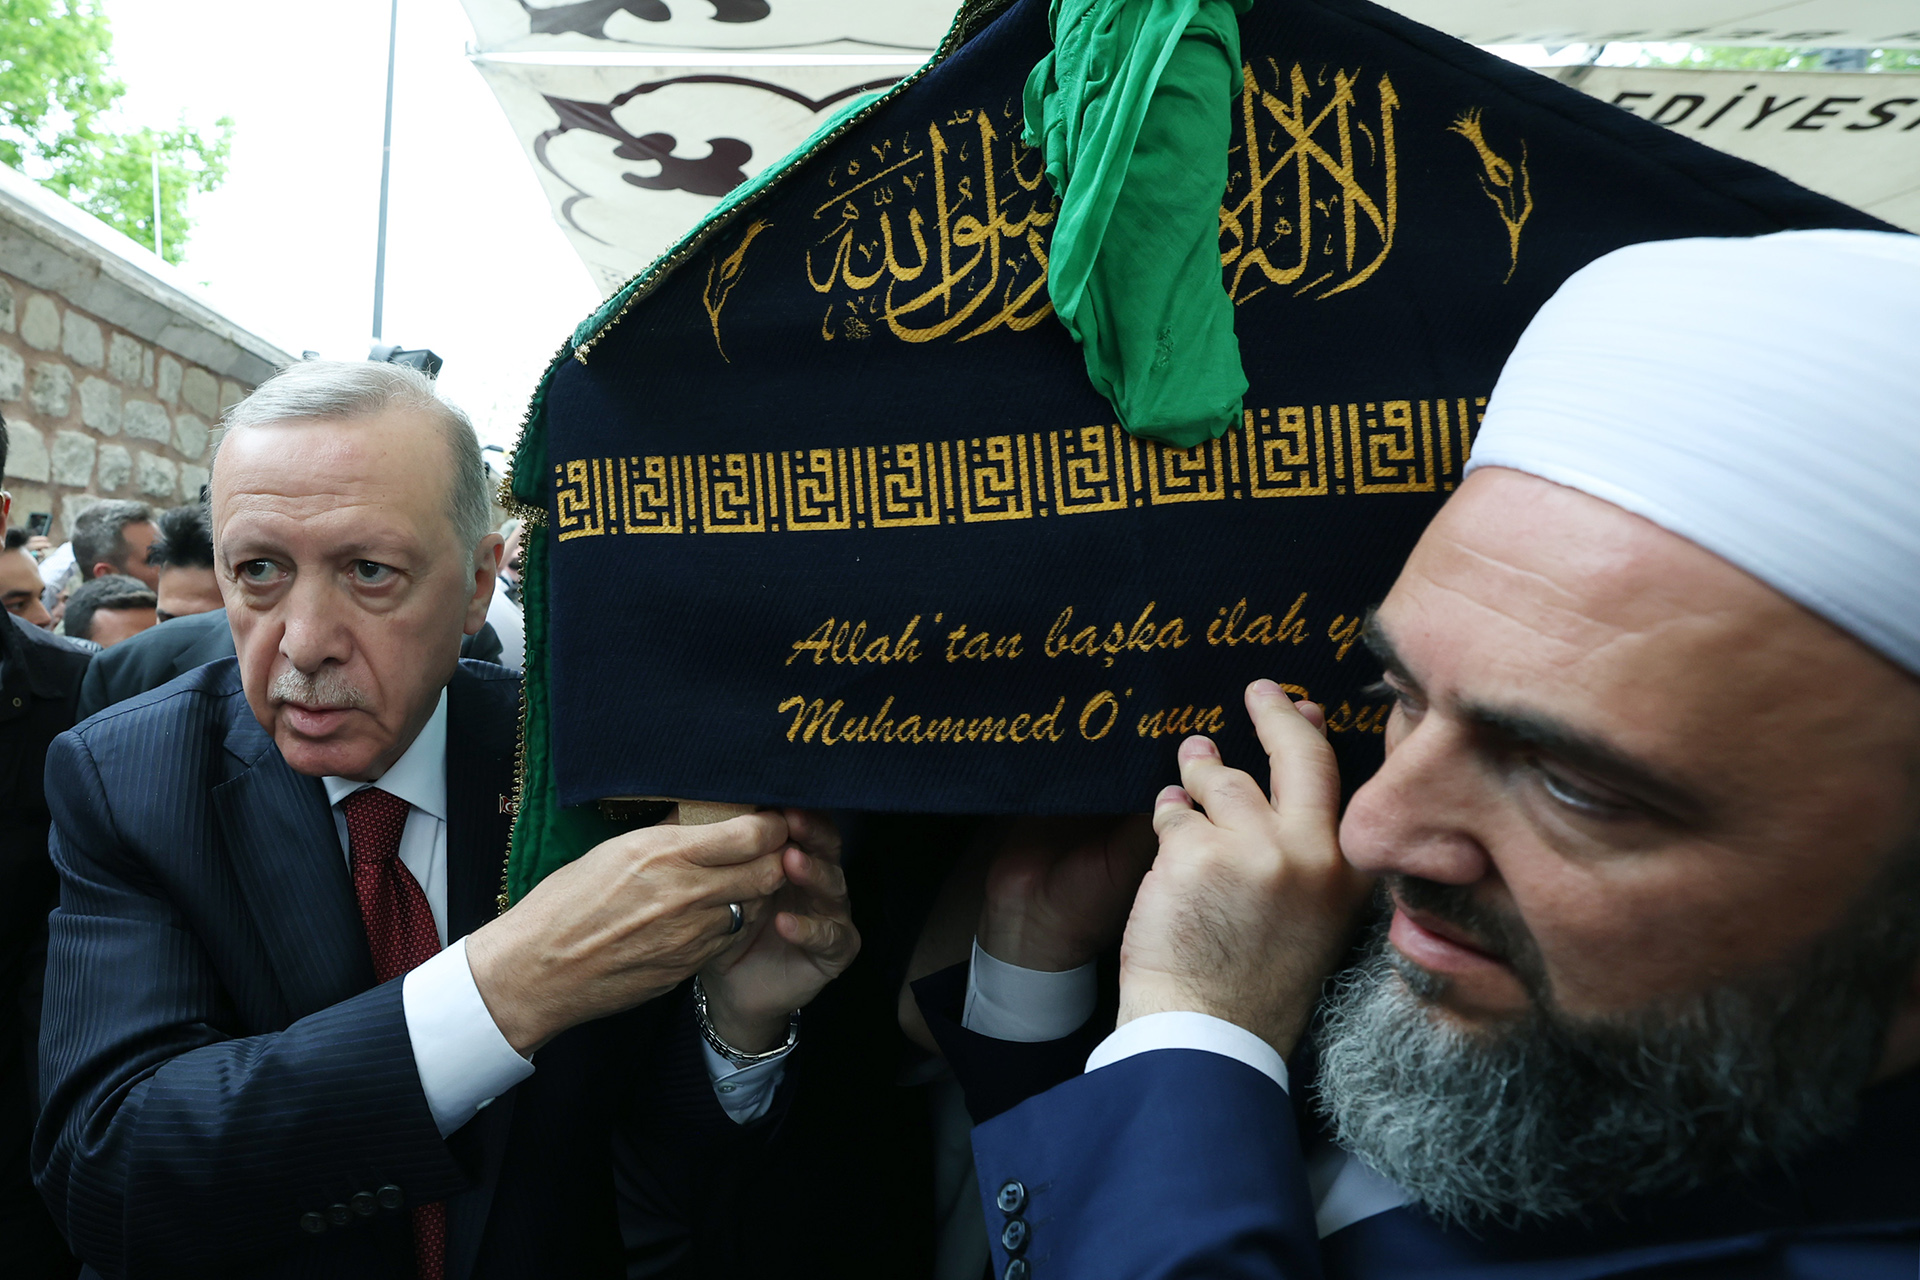 الآلاف يشيعون جنازتي الزنداني وزعيم طائفة إسماعيل آغا في إسطنبول | أخبار – البوكس نيوز